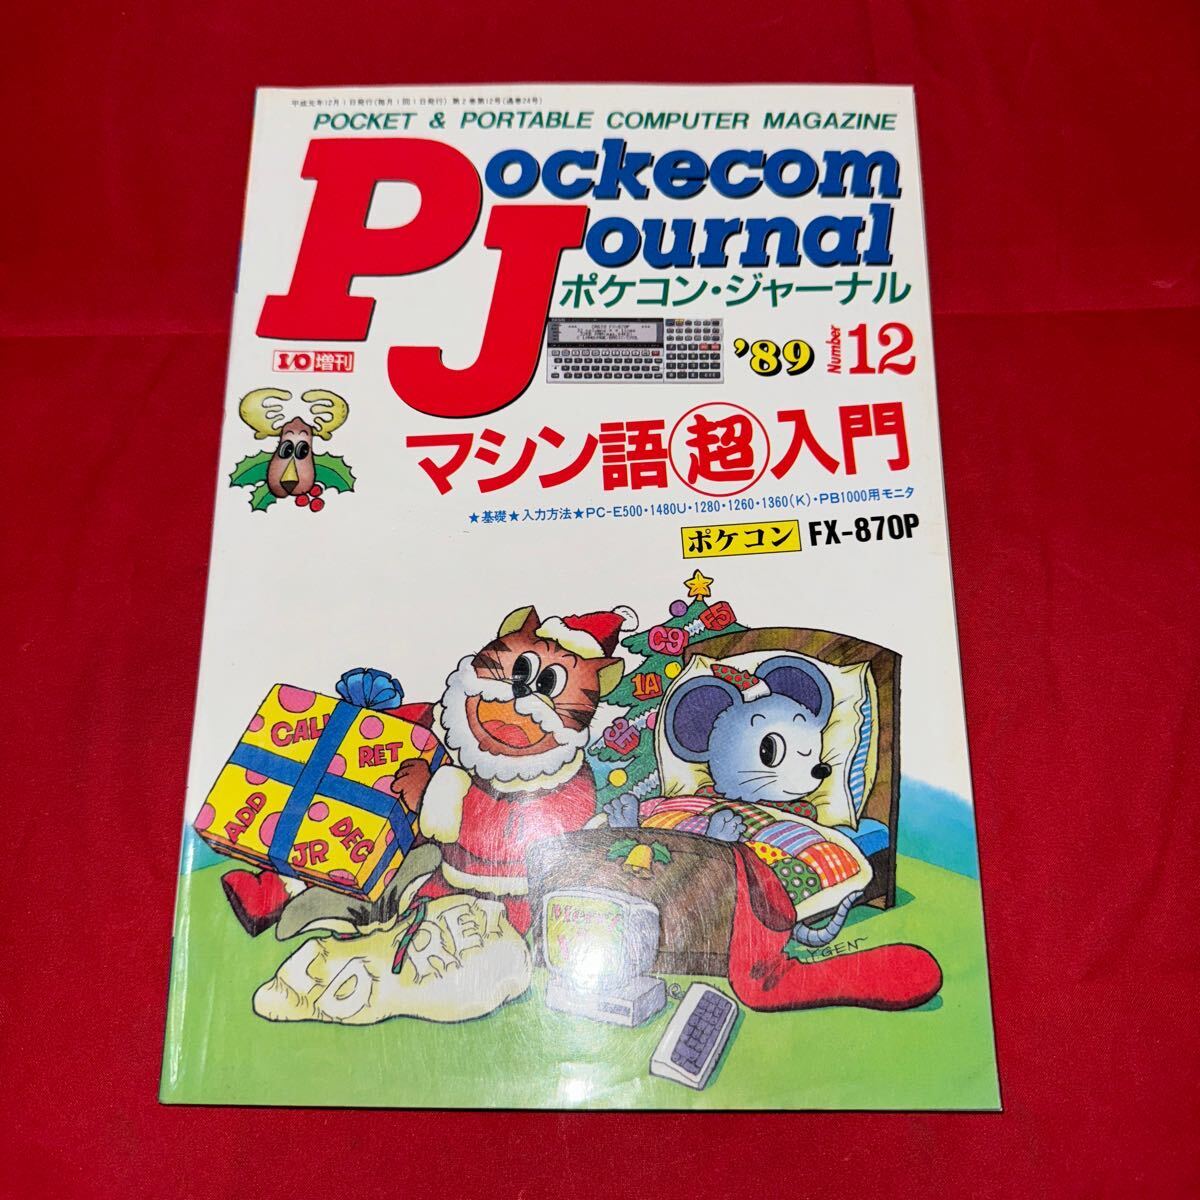 工学社 月刊ポケコンジャーナル 1989年(平成元年) 12月号Pockecom Journal _画像1